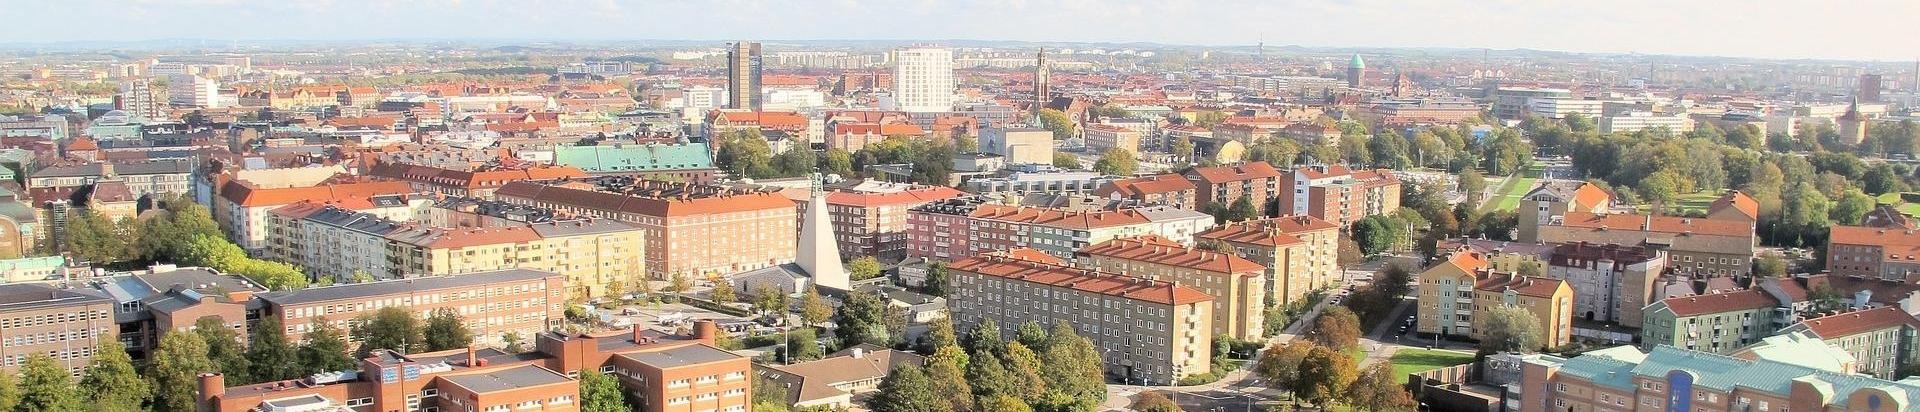 Stadsvy över Malmö stad taget från ett flygplan